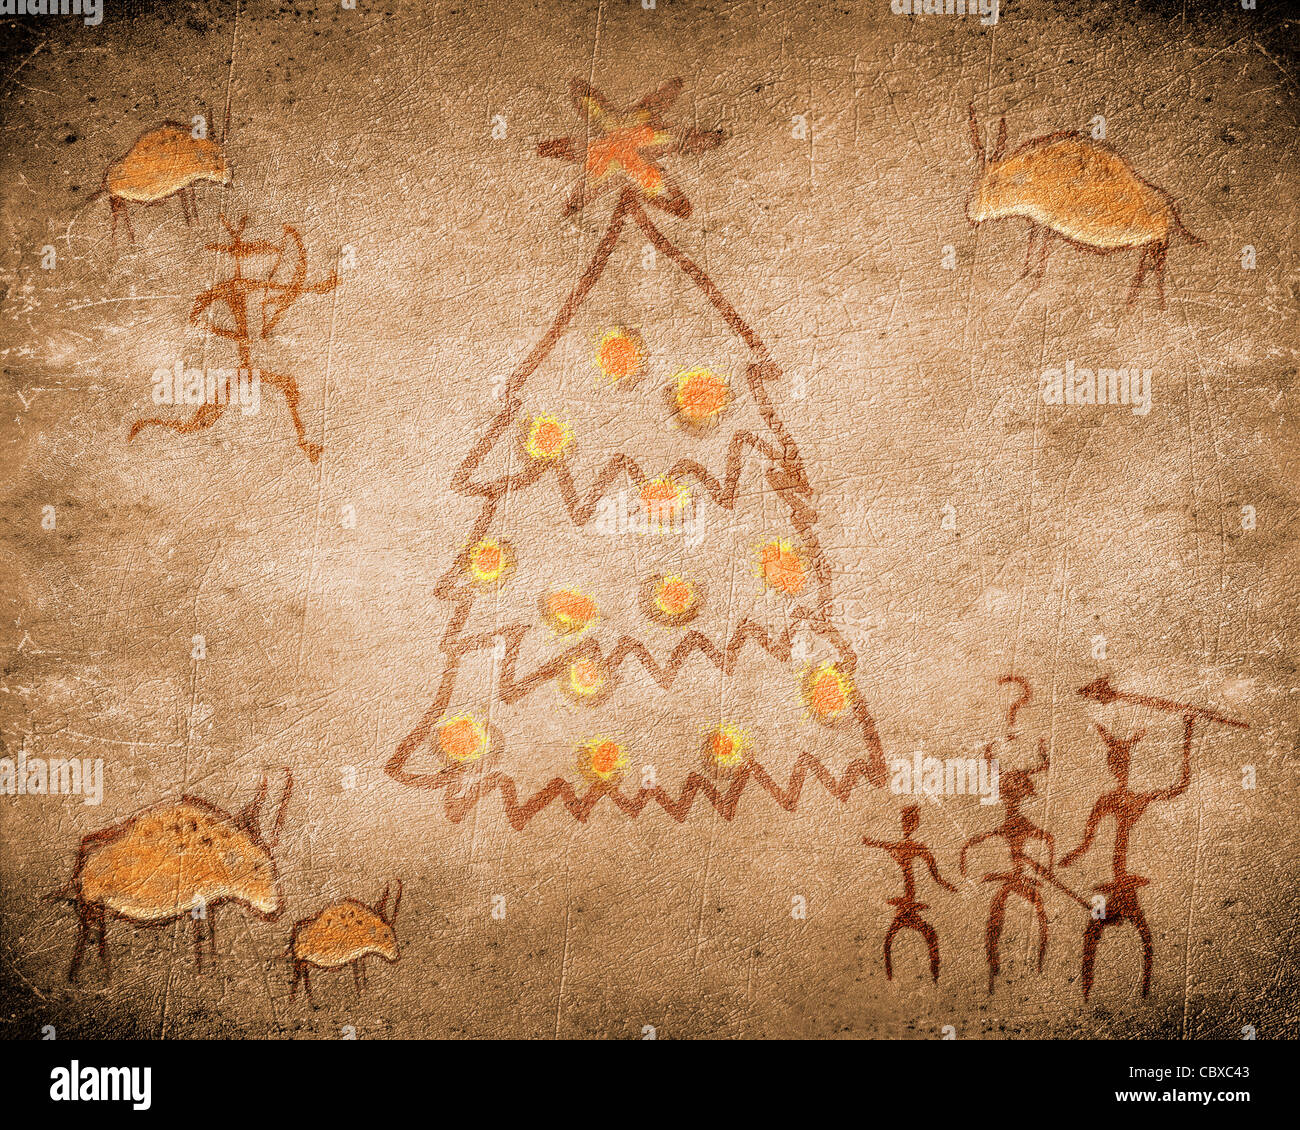 Grotte préhistorique peinture avec arbre de Noël Banque D'Images